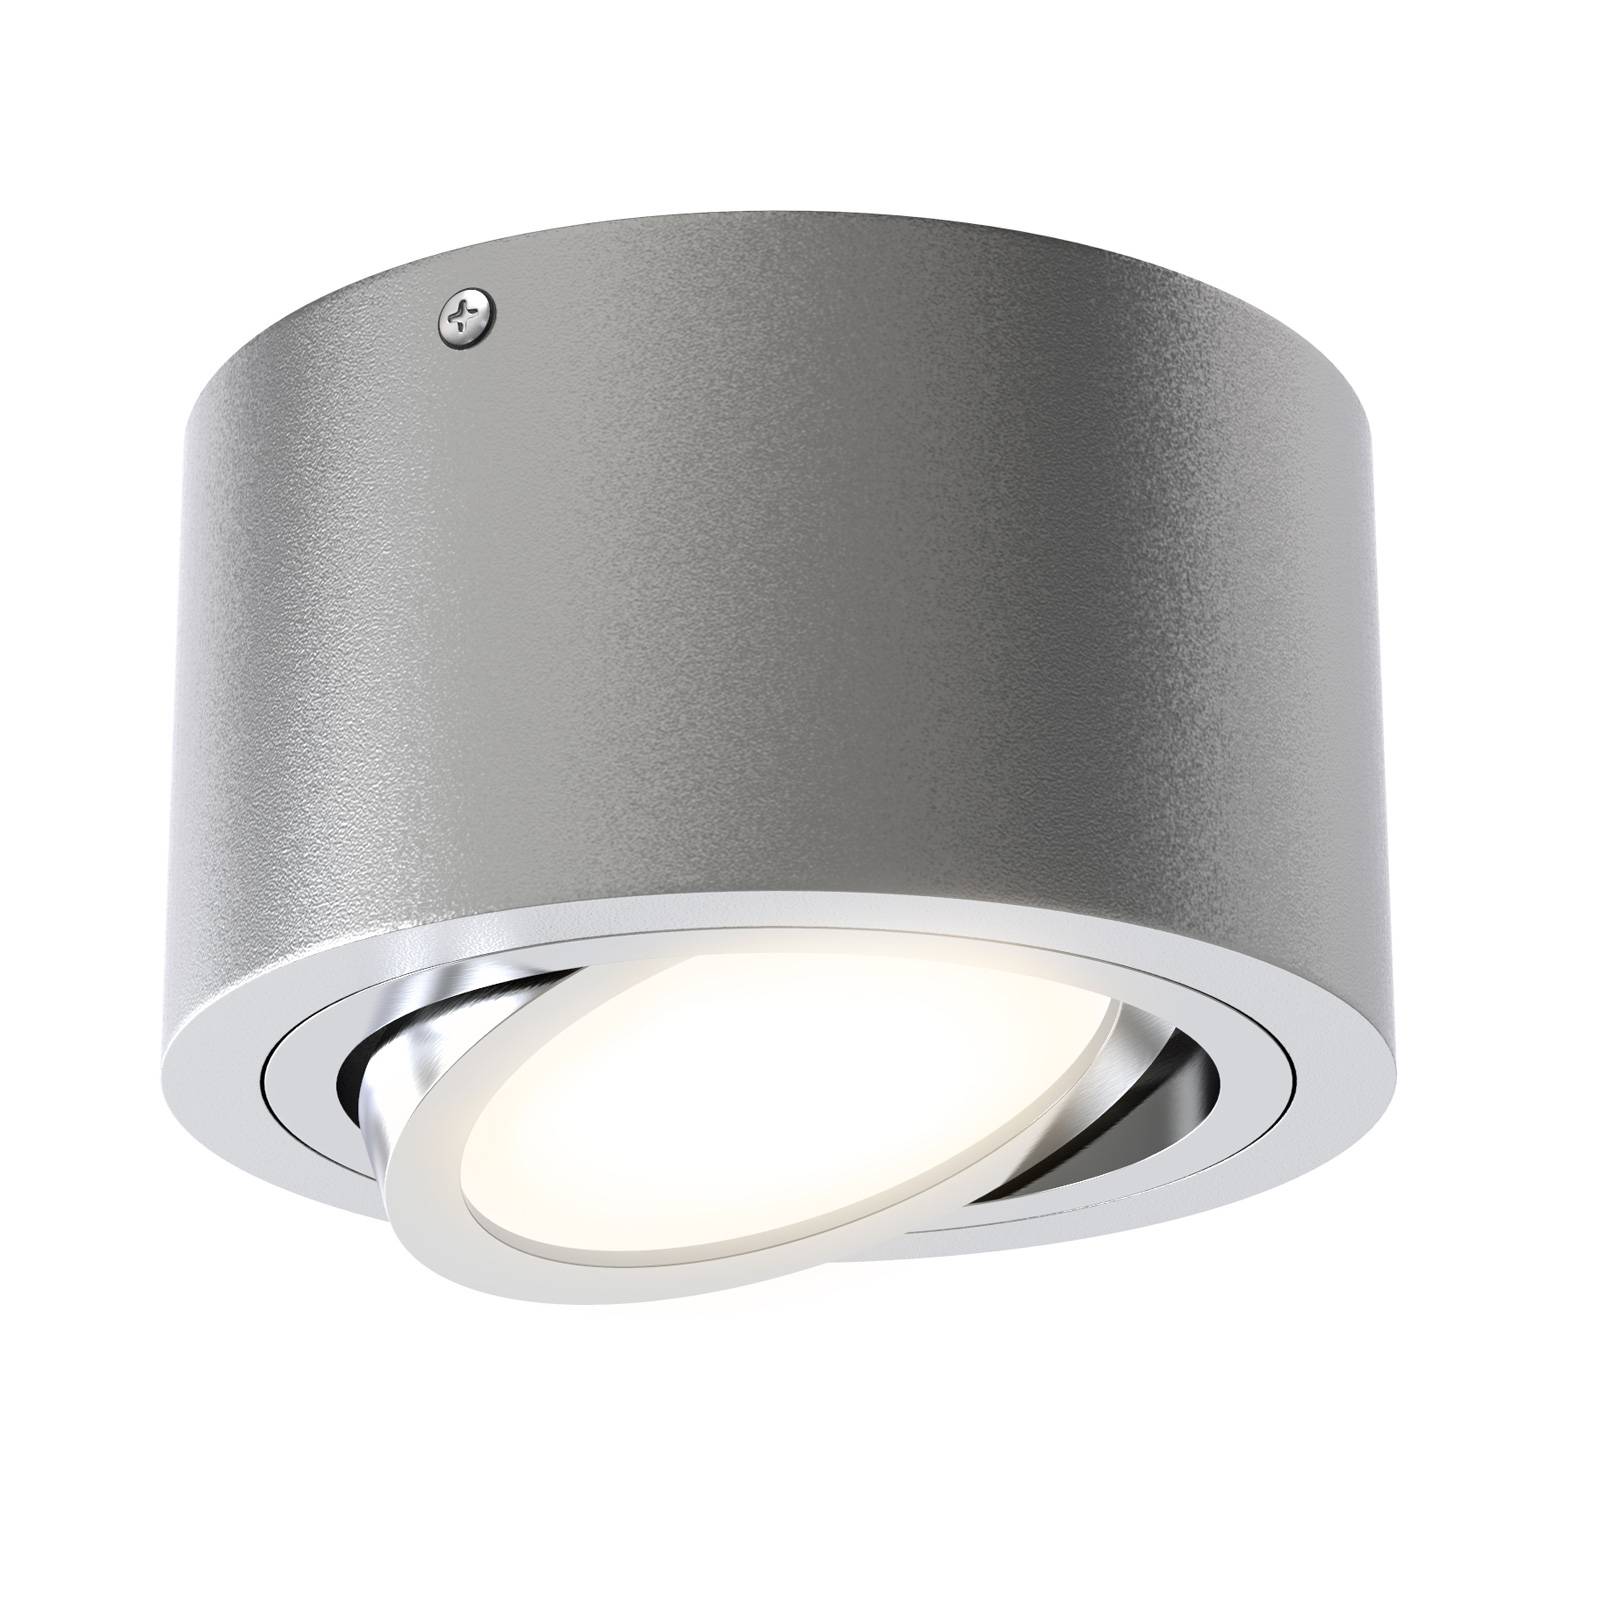 LED plafondspot tube 7121-014 in zilver